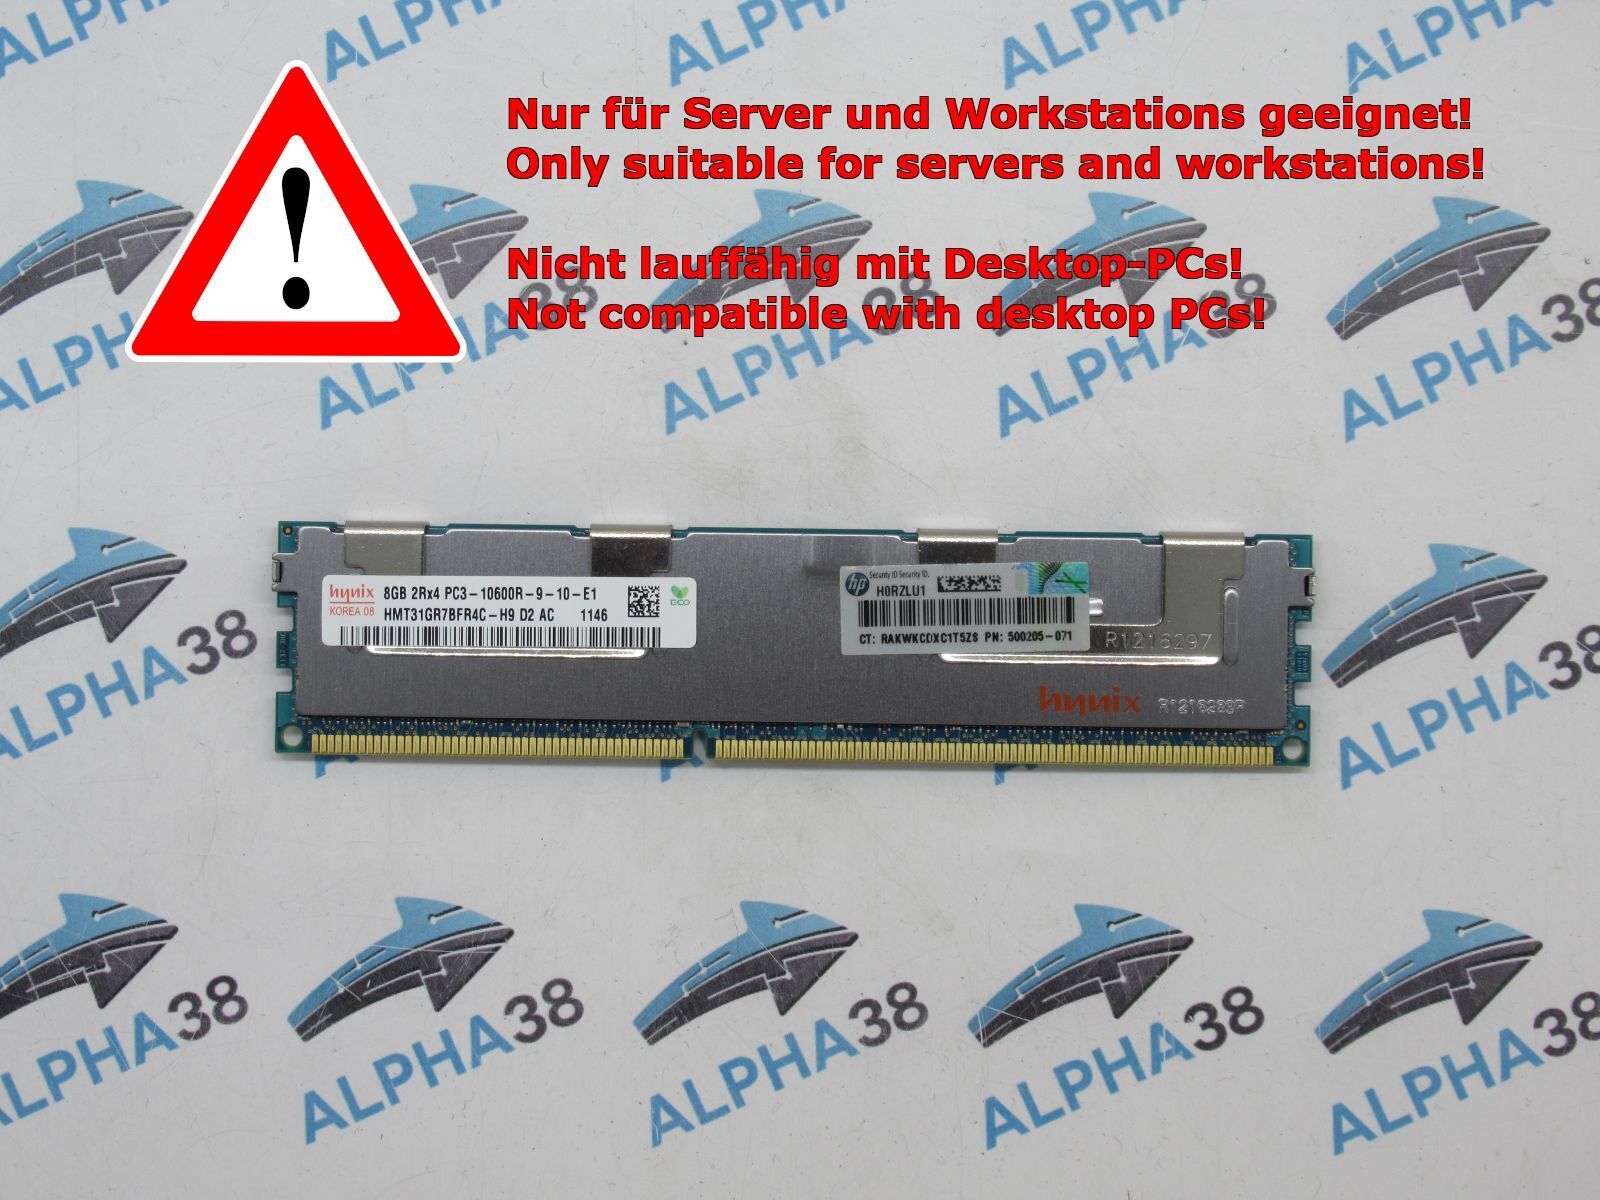 Hynix 8GB DDR3 PC3-10600 8GB DDR3 1333MHz ECC Memory Module hmt31gr7bfr4c-h9 Memory